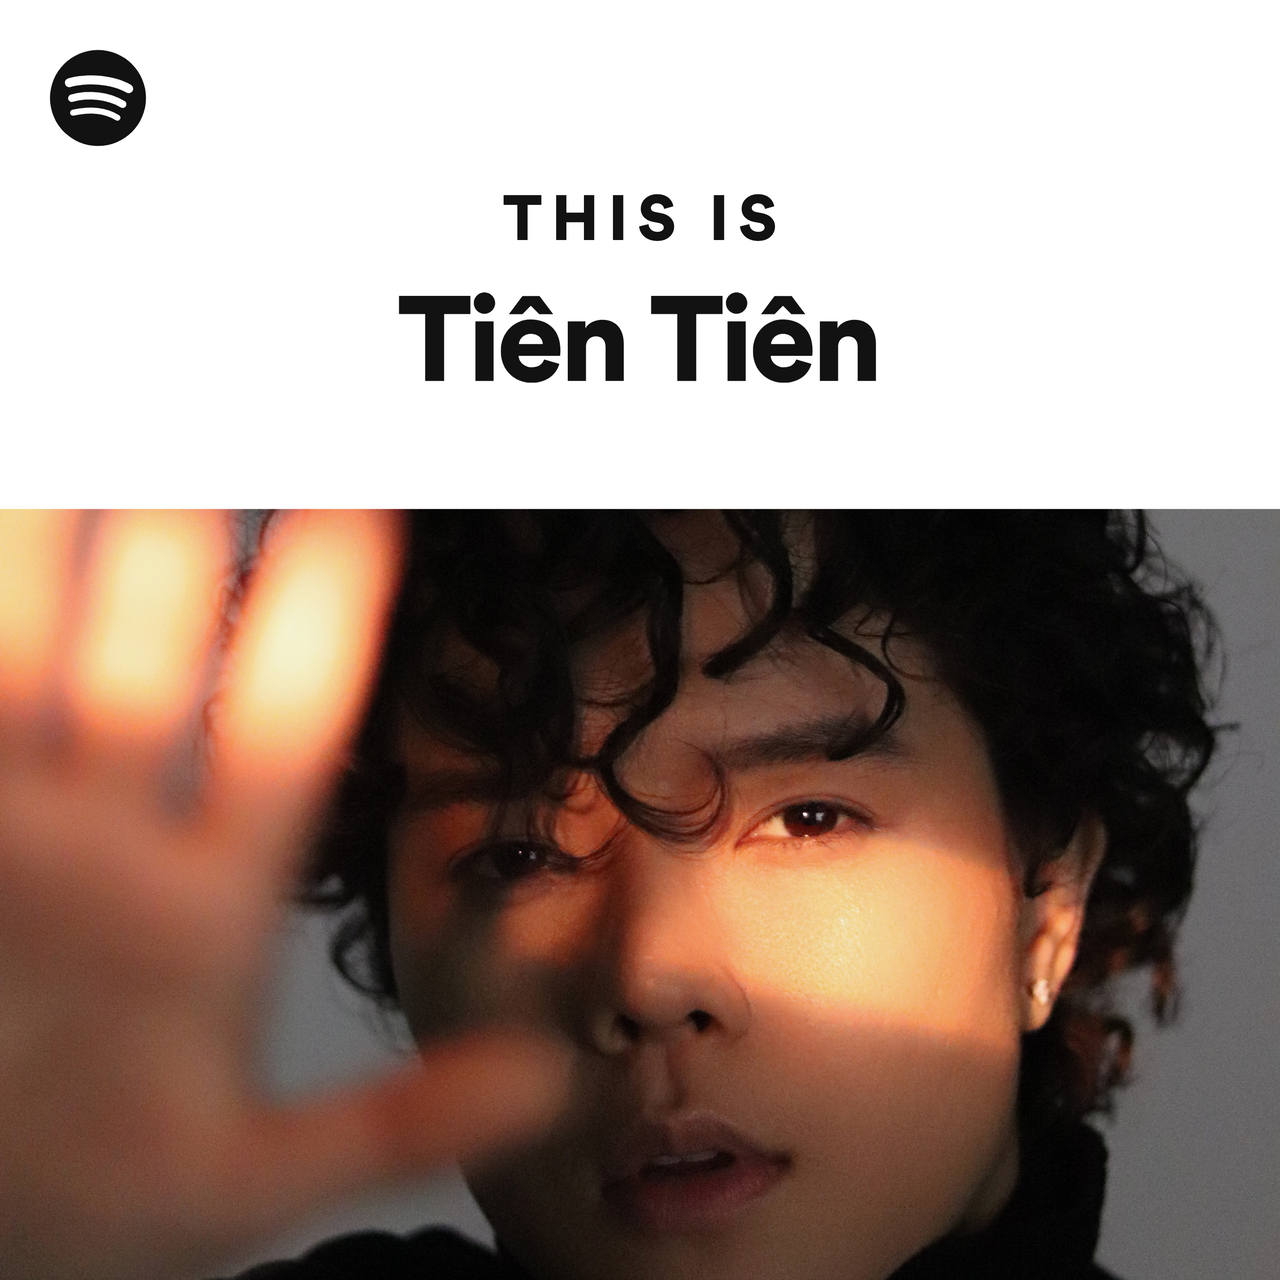 This Is Tiên Tiên - playlist by Spotify | Spotify